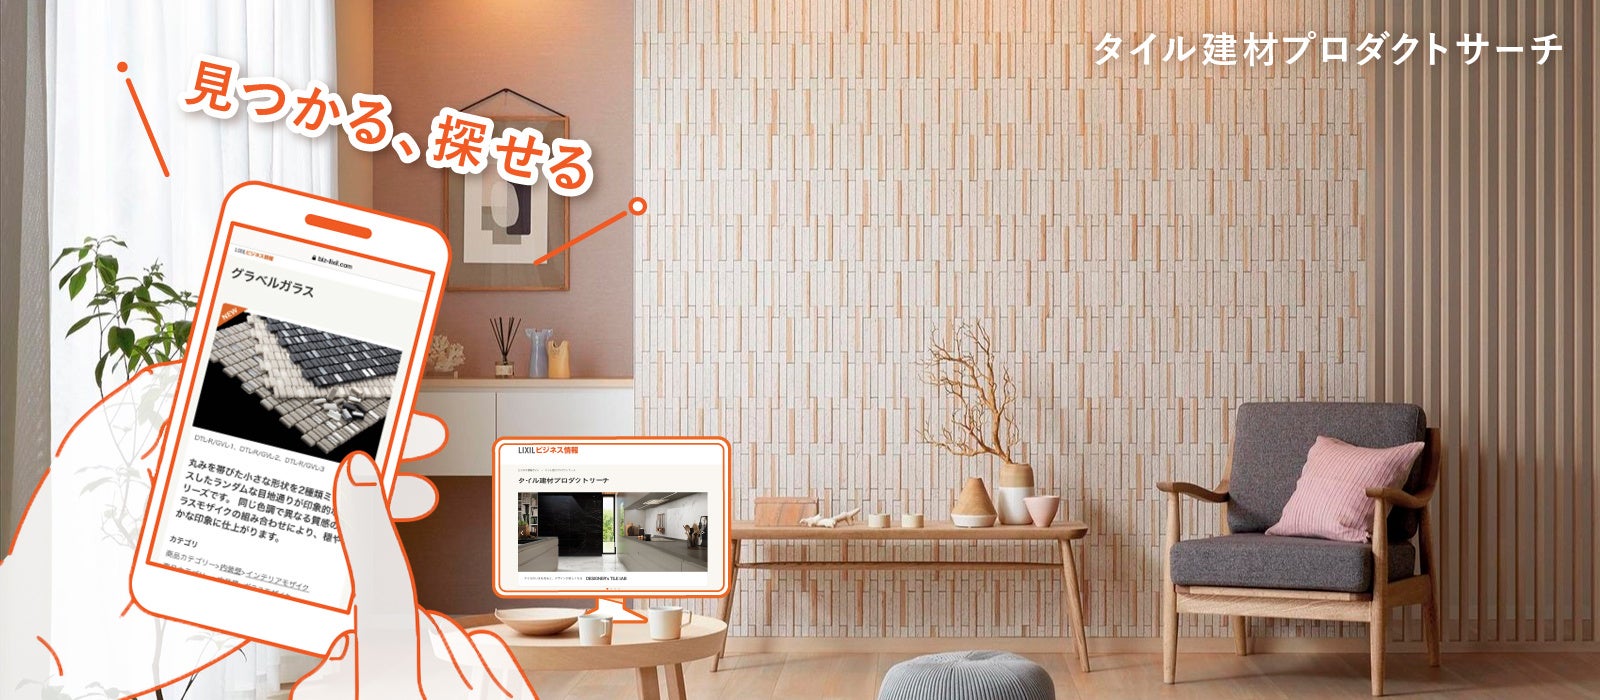 冊子カタログをデジタル化することで高い利便性で商品選定をサポートする日本最大のタイル選定サイト「タイル建材 プロダクトサーチ」をオープンのサブ画像1